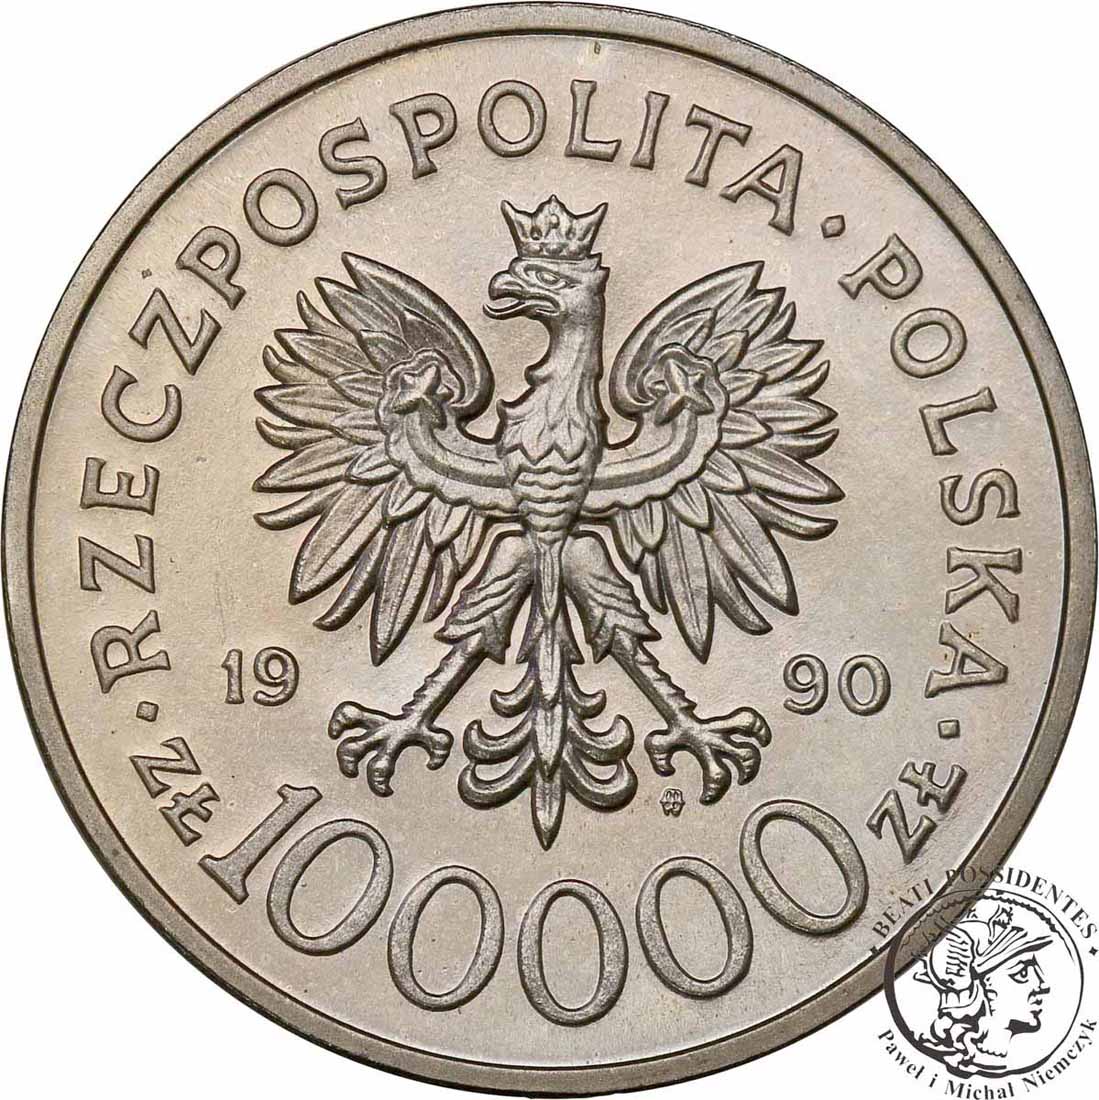 PRÓBA Nikiel 100 000 złotych 1990 Solidarność st.L